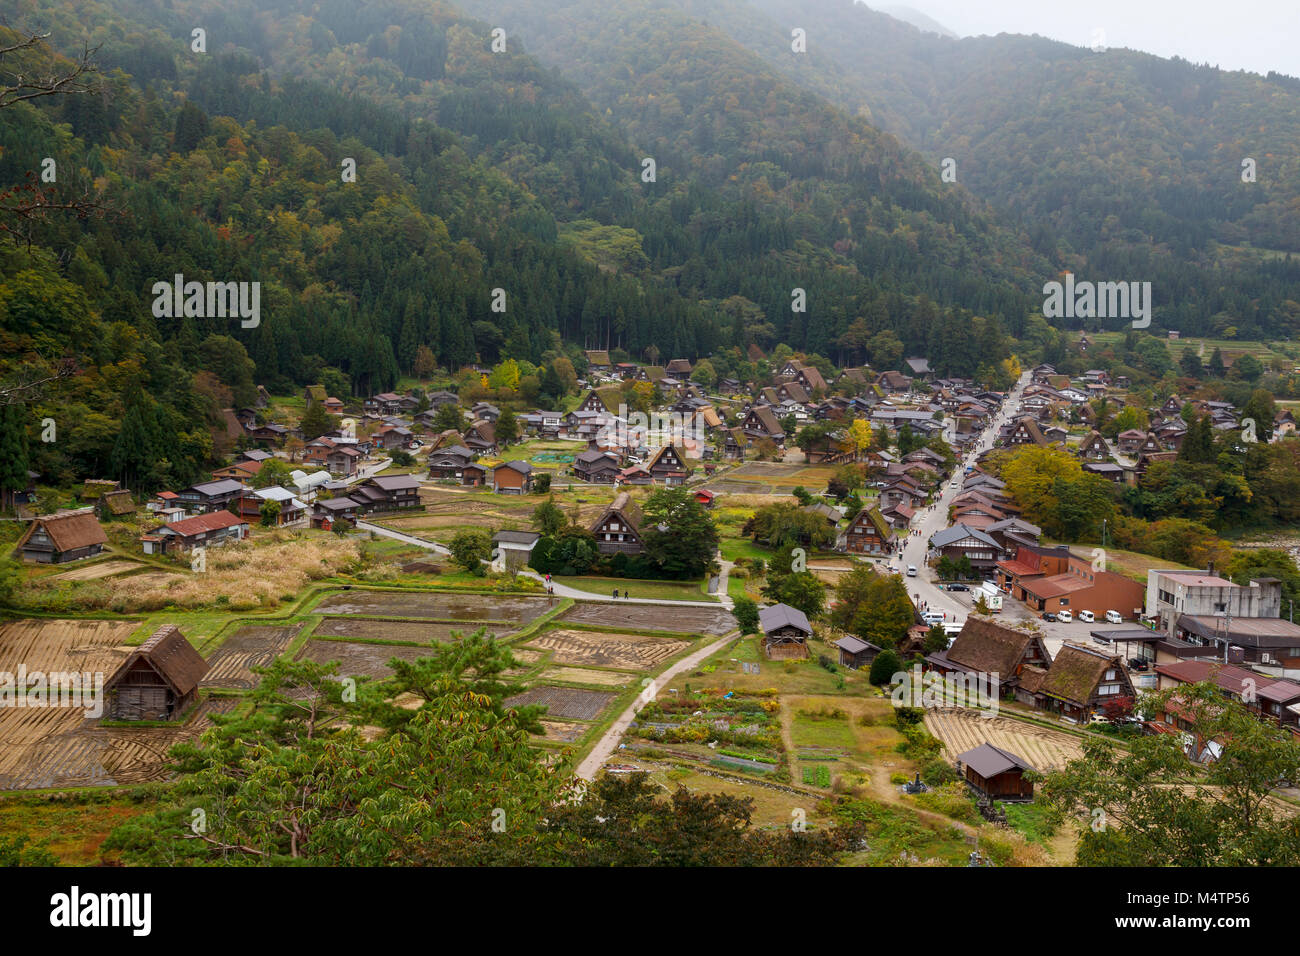 Village de Shirakawa-go dans la préfecture de Gifu, Japon. C'est l'un des sites du patrimoine mondial de l'UNESCO. Banque D'Images